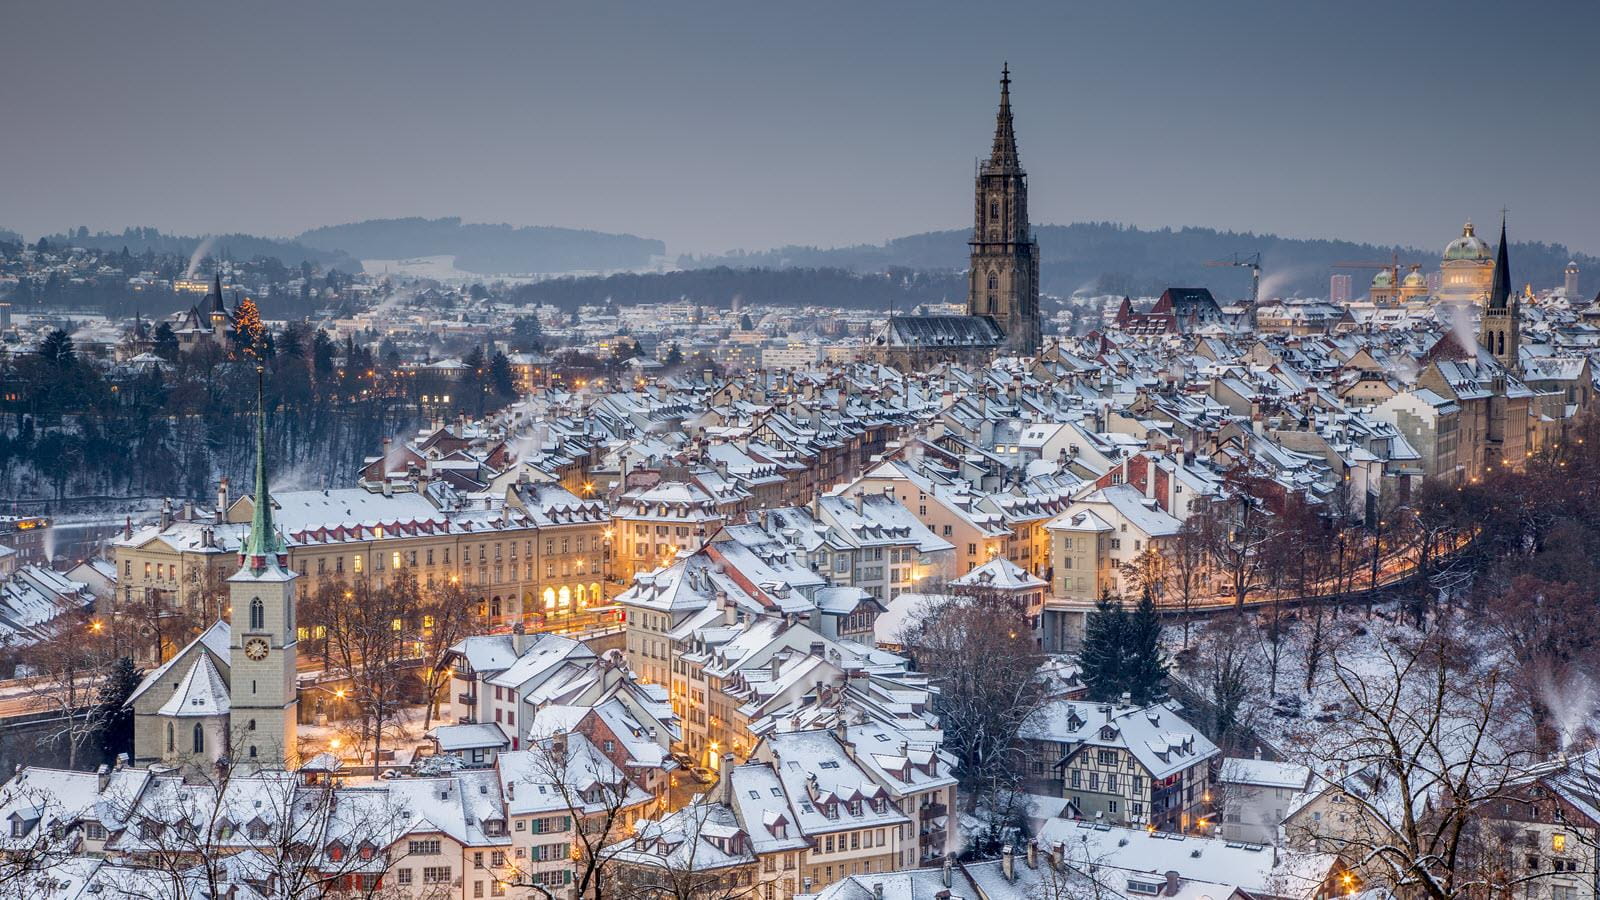 Die schneebedeckte Schweizer Hauptstadt Bern mit dem Turm des Münsters am Horizont